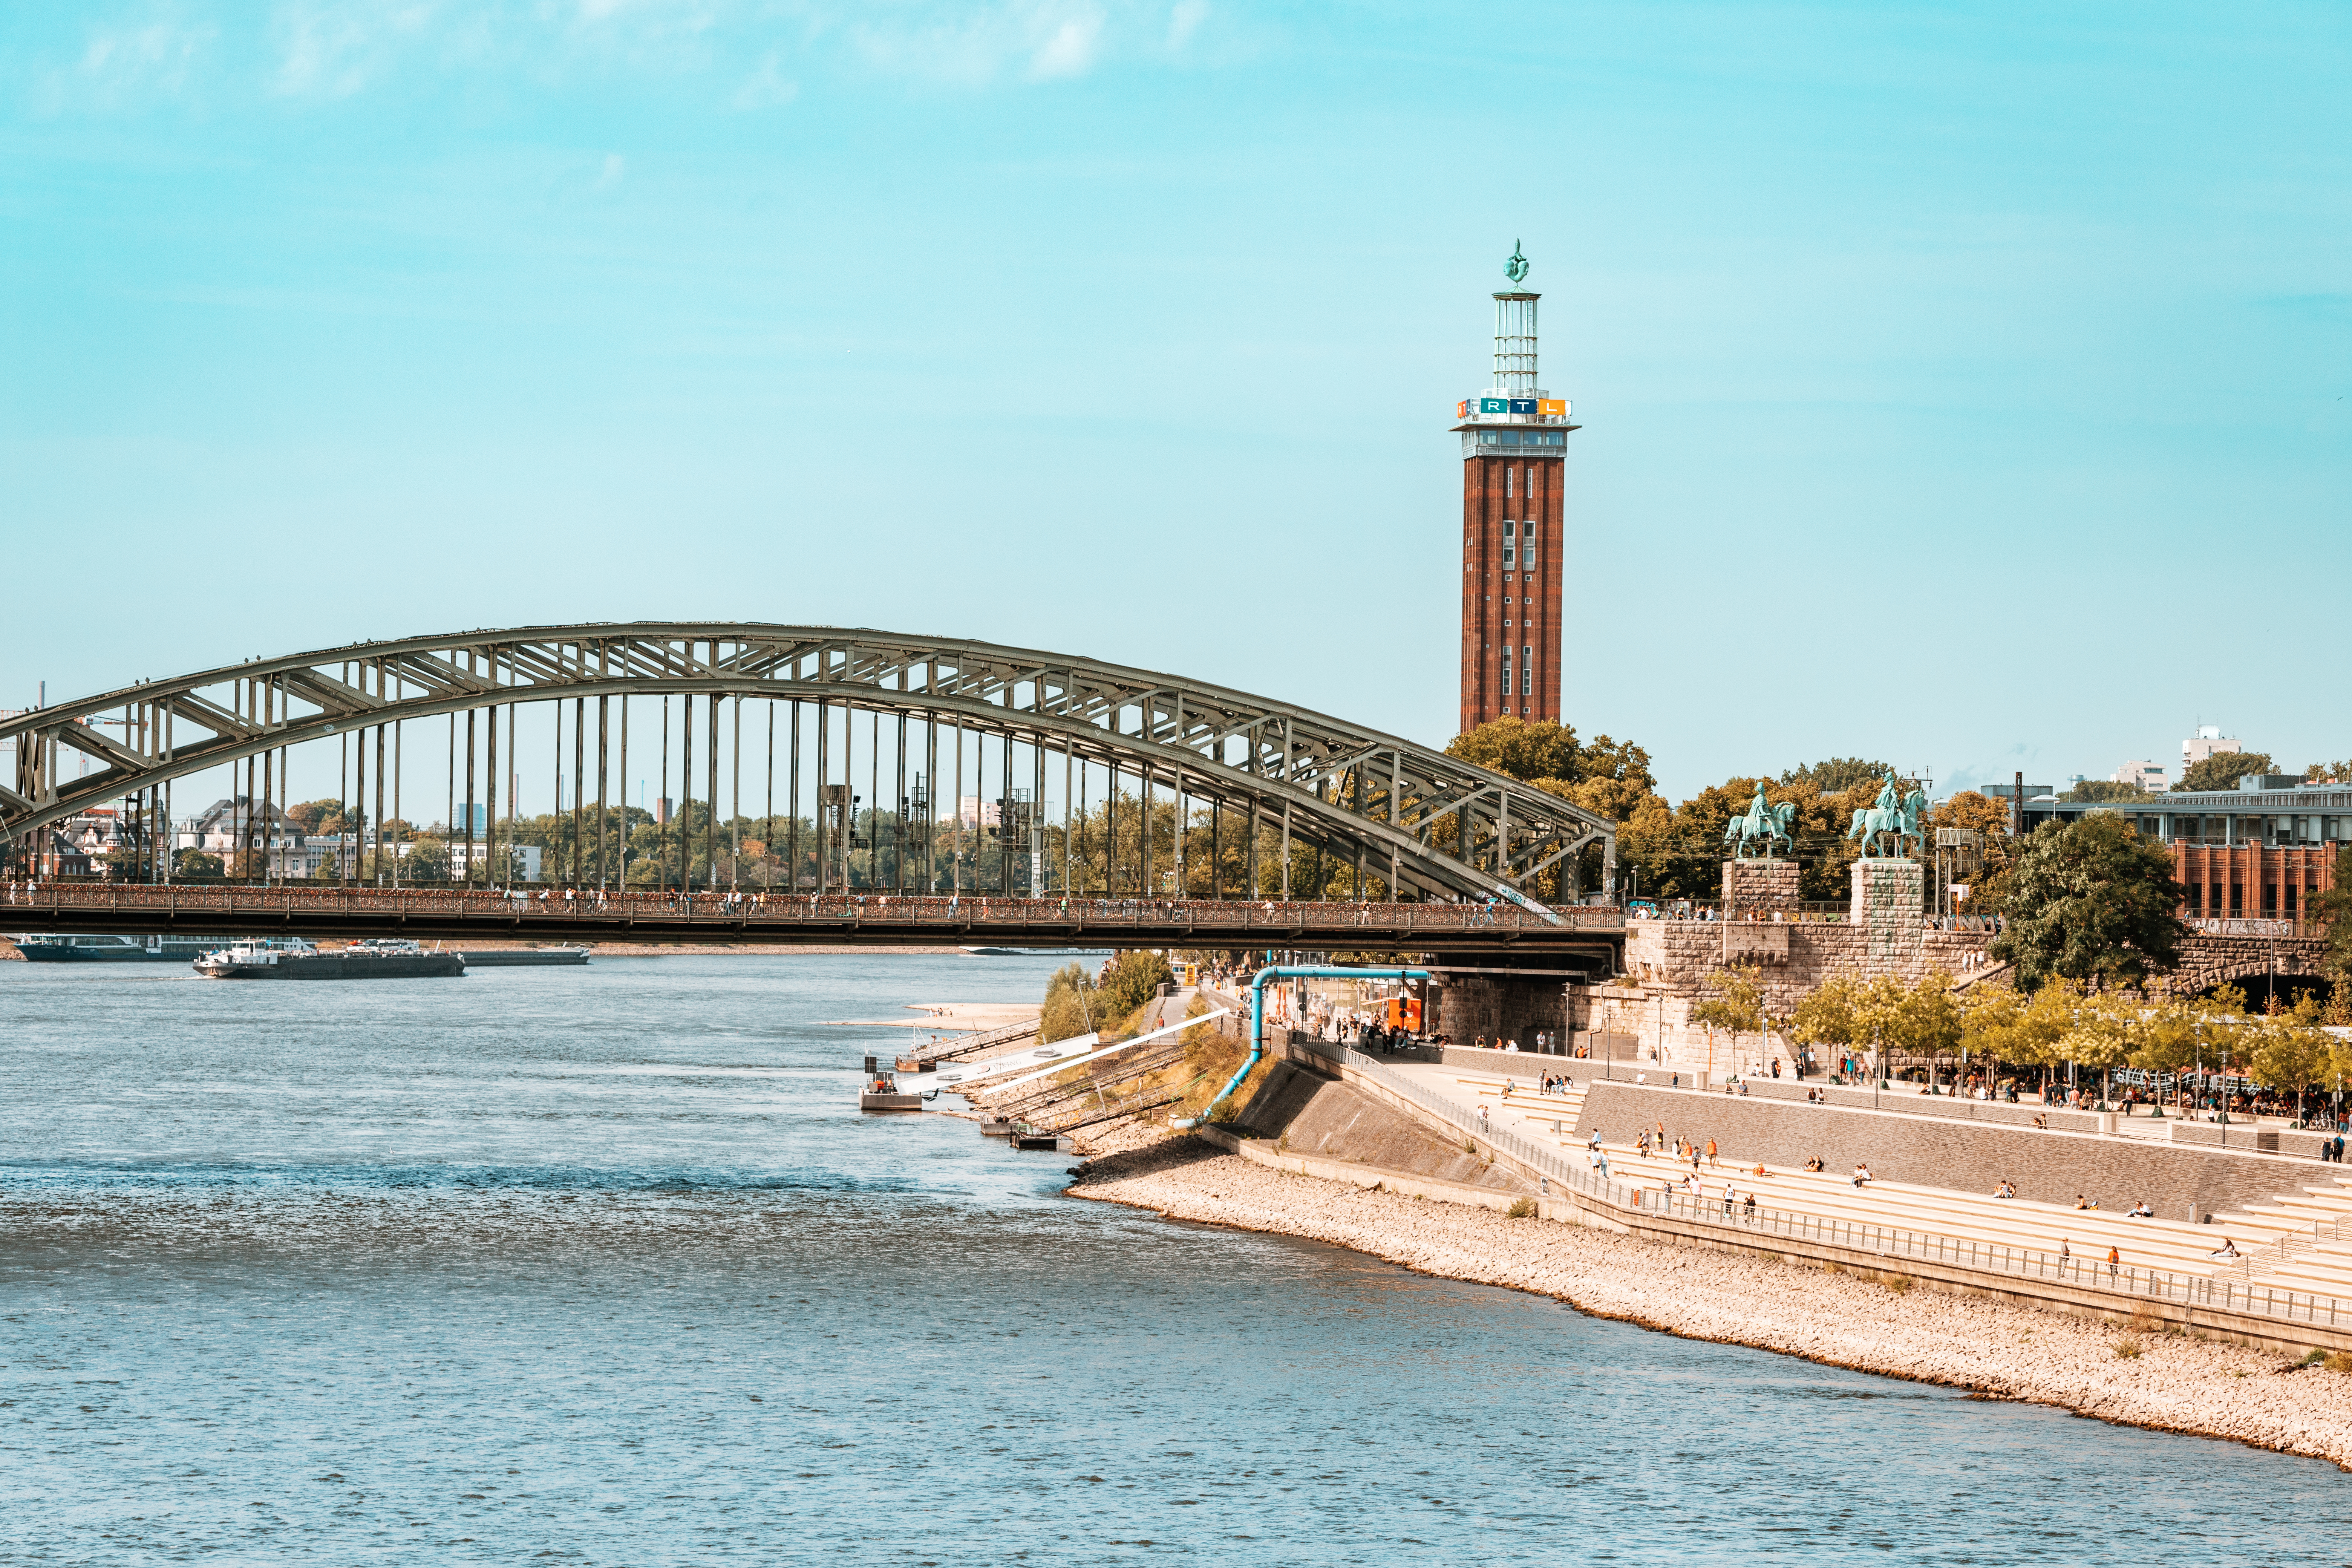 Abbildung zeigt RTL-Turm und Brücke über den Fluss Rhein